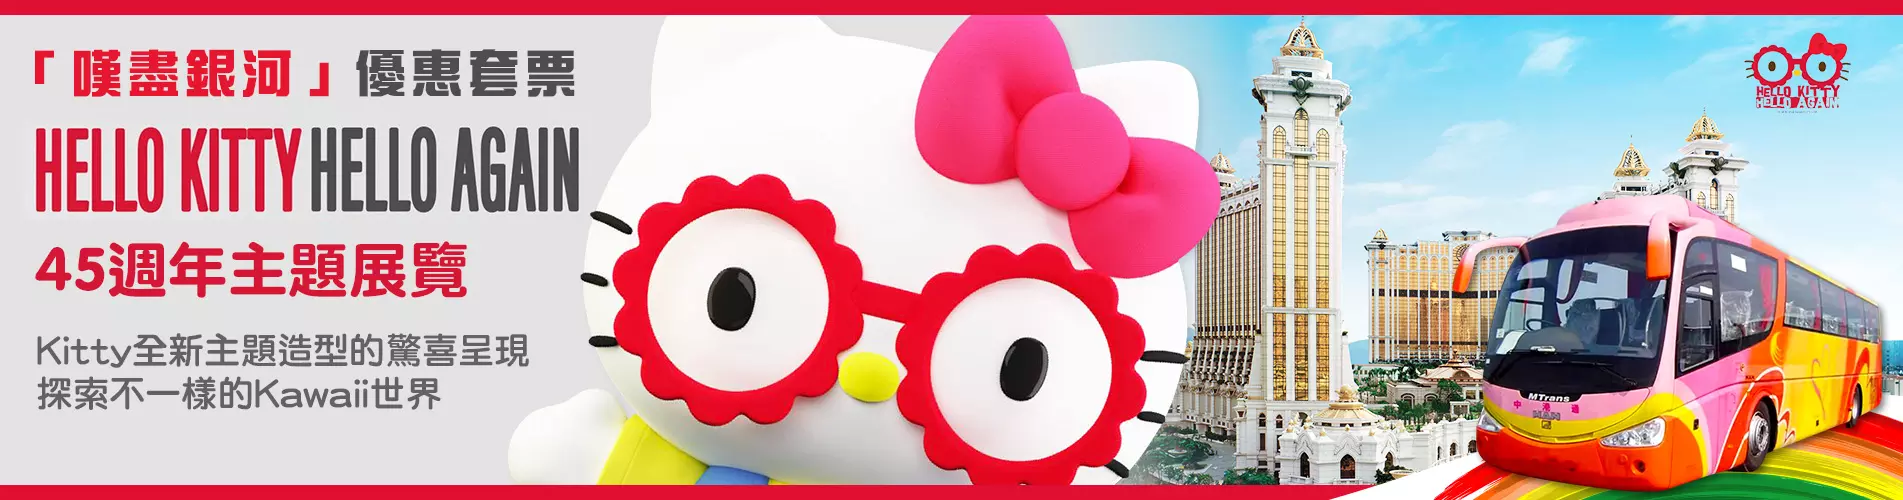 「嘆盡銀河」 - Hello Kitty Hello Again 45週年主題展覽 (中港通巴士+船票)